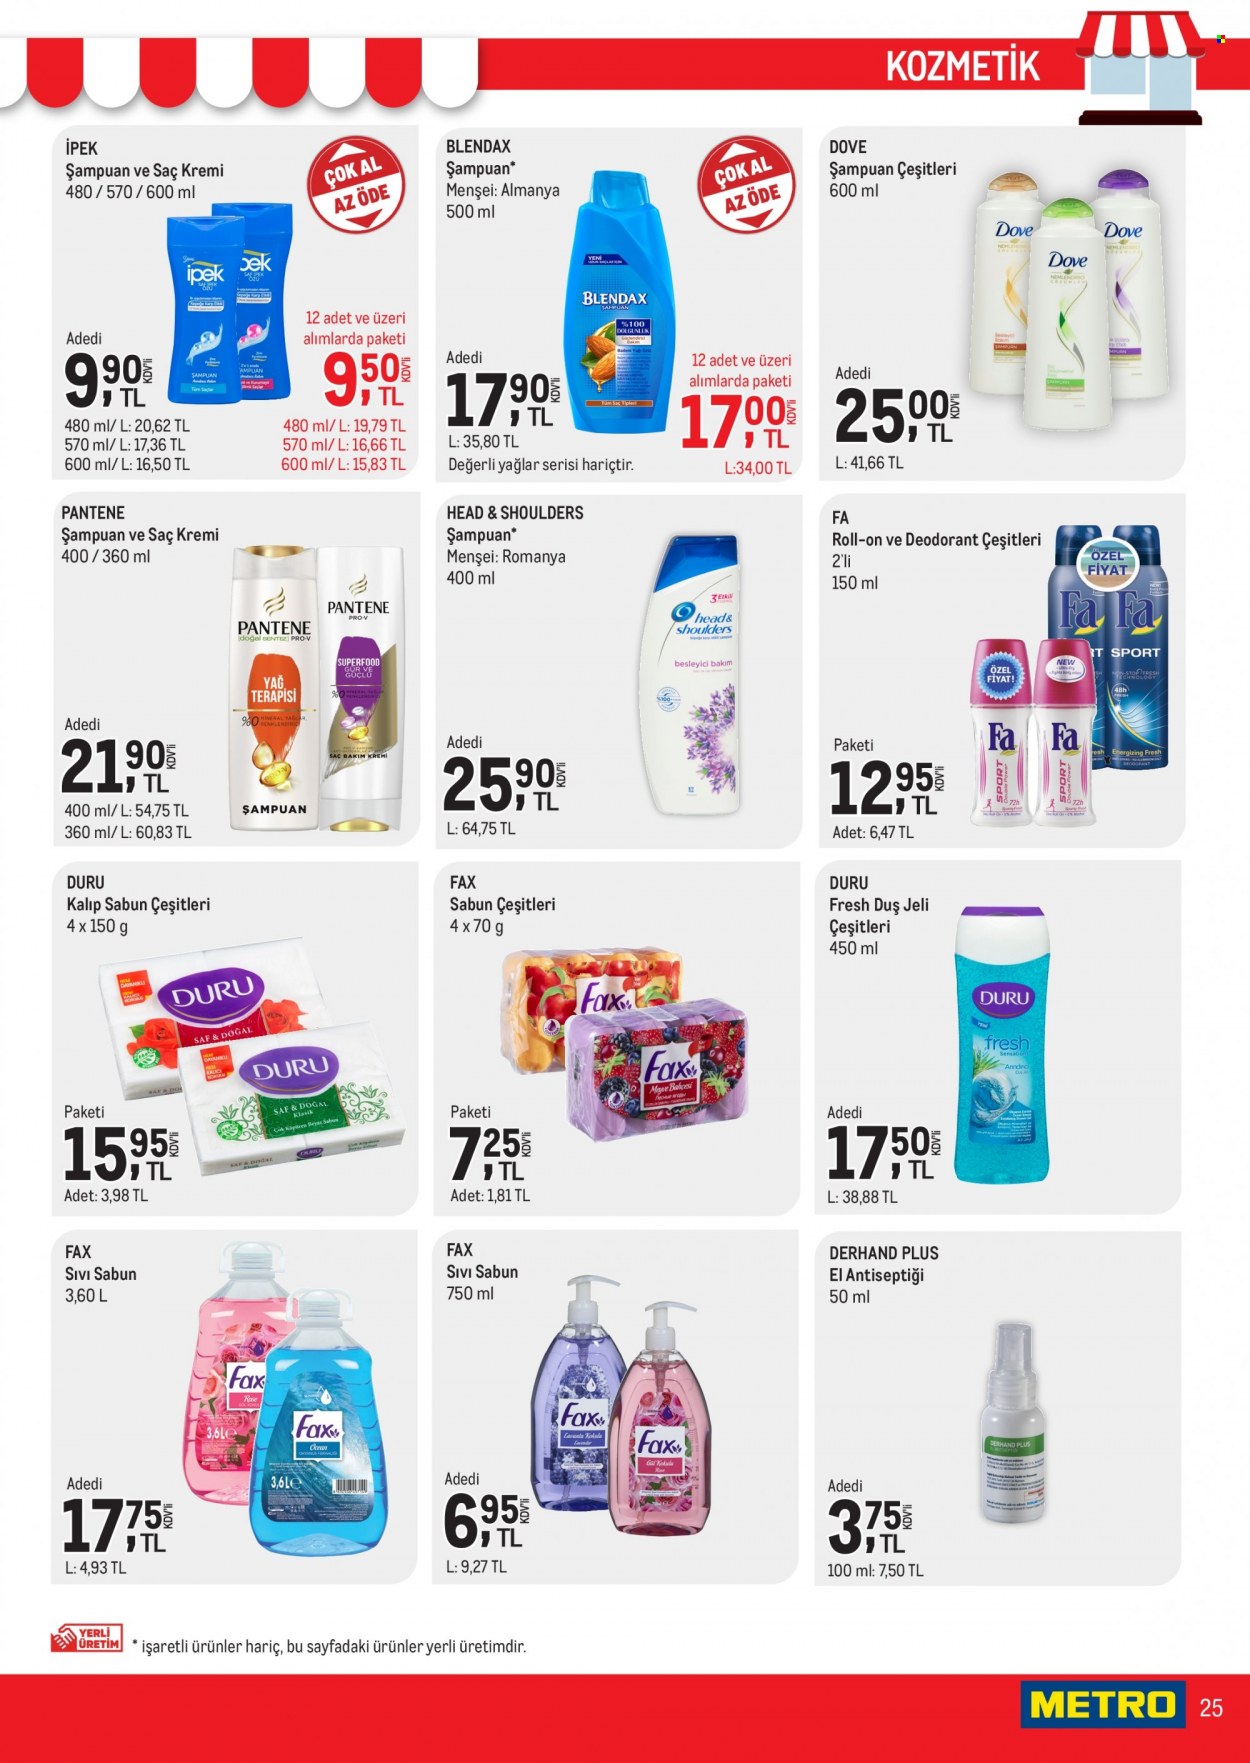 thumbnail - Metro aktüel ürünler, broşür  - 12.1.2021 - 12.7.2021 - Satıştaki ürünler - sabun, şampuan, sıvı sabunu, Head & Shoulders, Dove, duş jeli, kremi, saç kremi, Pantene, roll-on, deodorant. Sayfa 25.